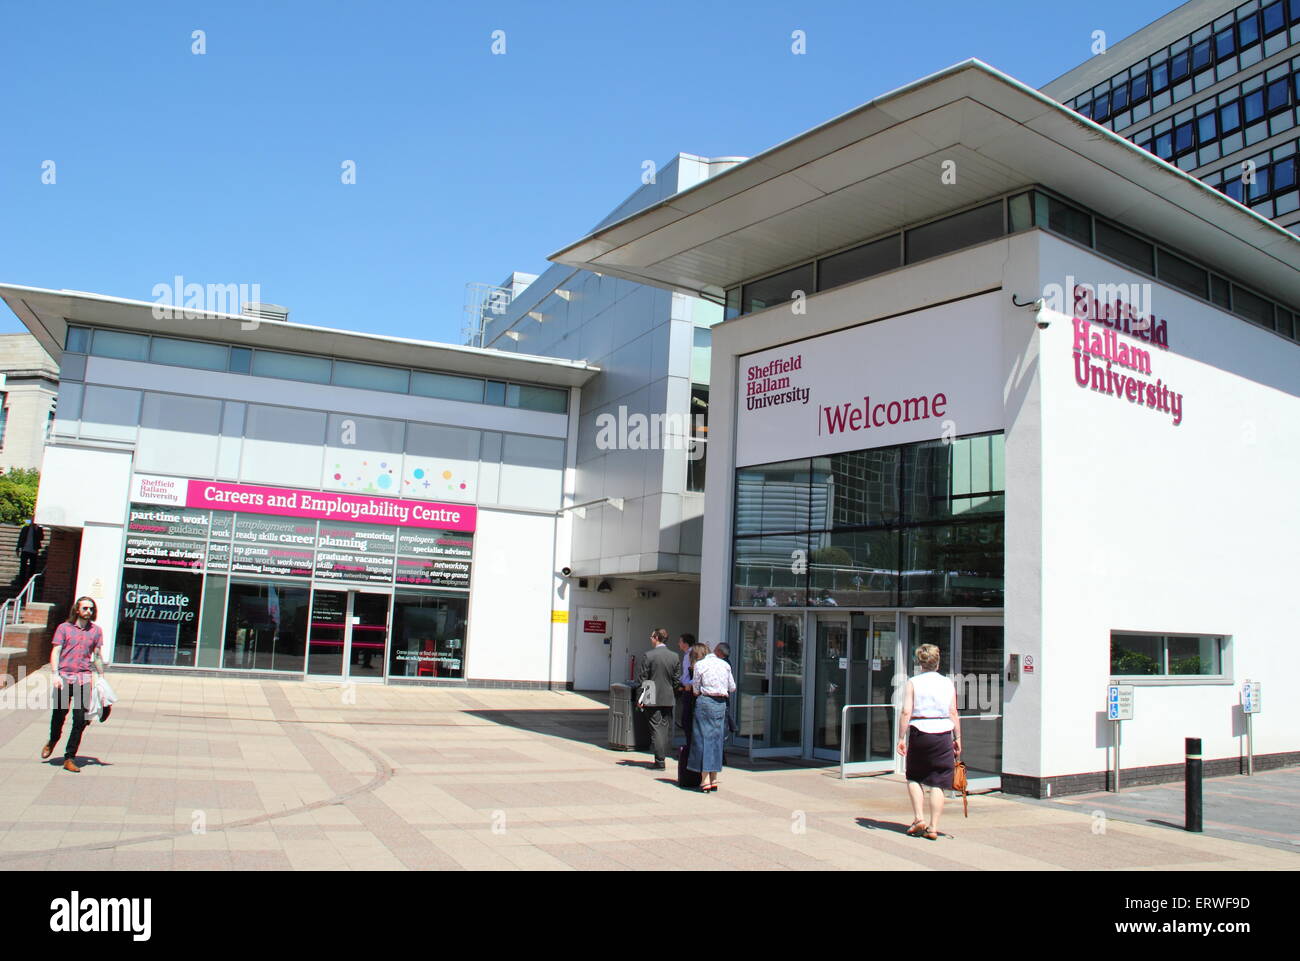 La entrada a la Universidad de Sheffield Hallam, Howard Street campus, Sheffield, Reino Unido busca las carreras & Centro de empleabilidad Foto de stock